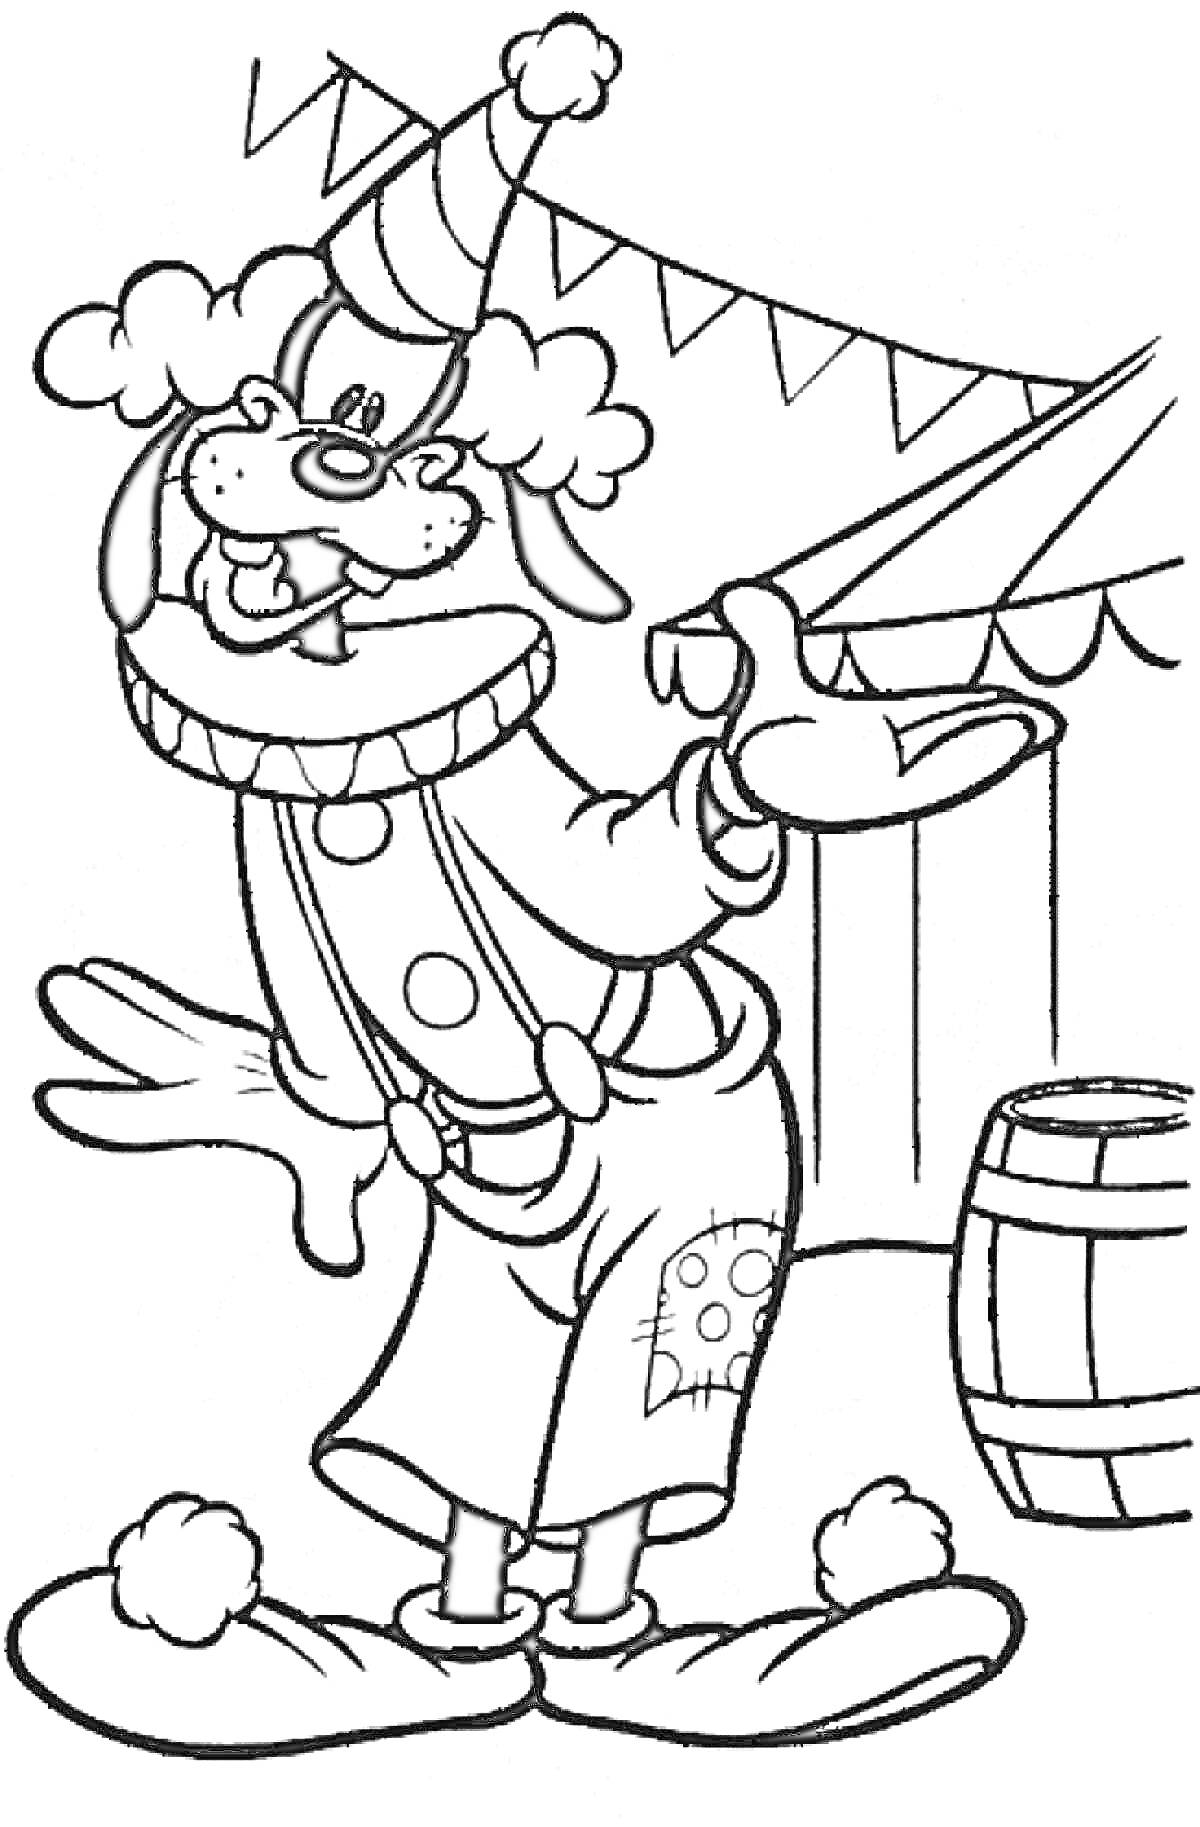 Раскраска Гуфи-клоун на цирковом представлении, на заднем плане флажки и бочка